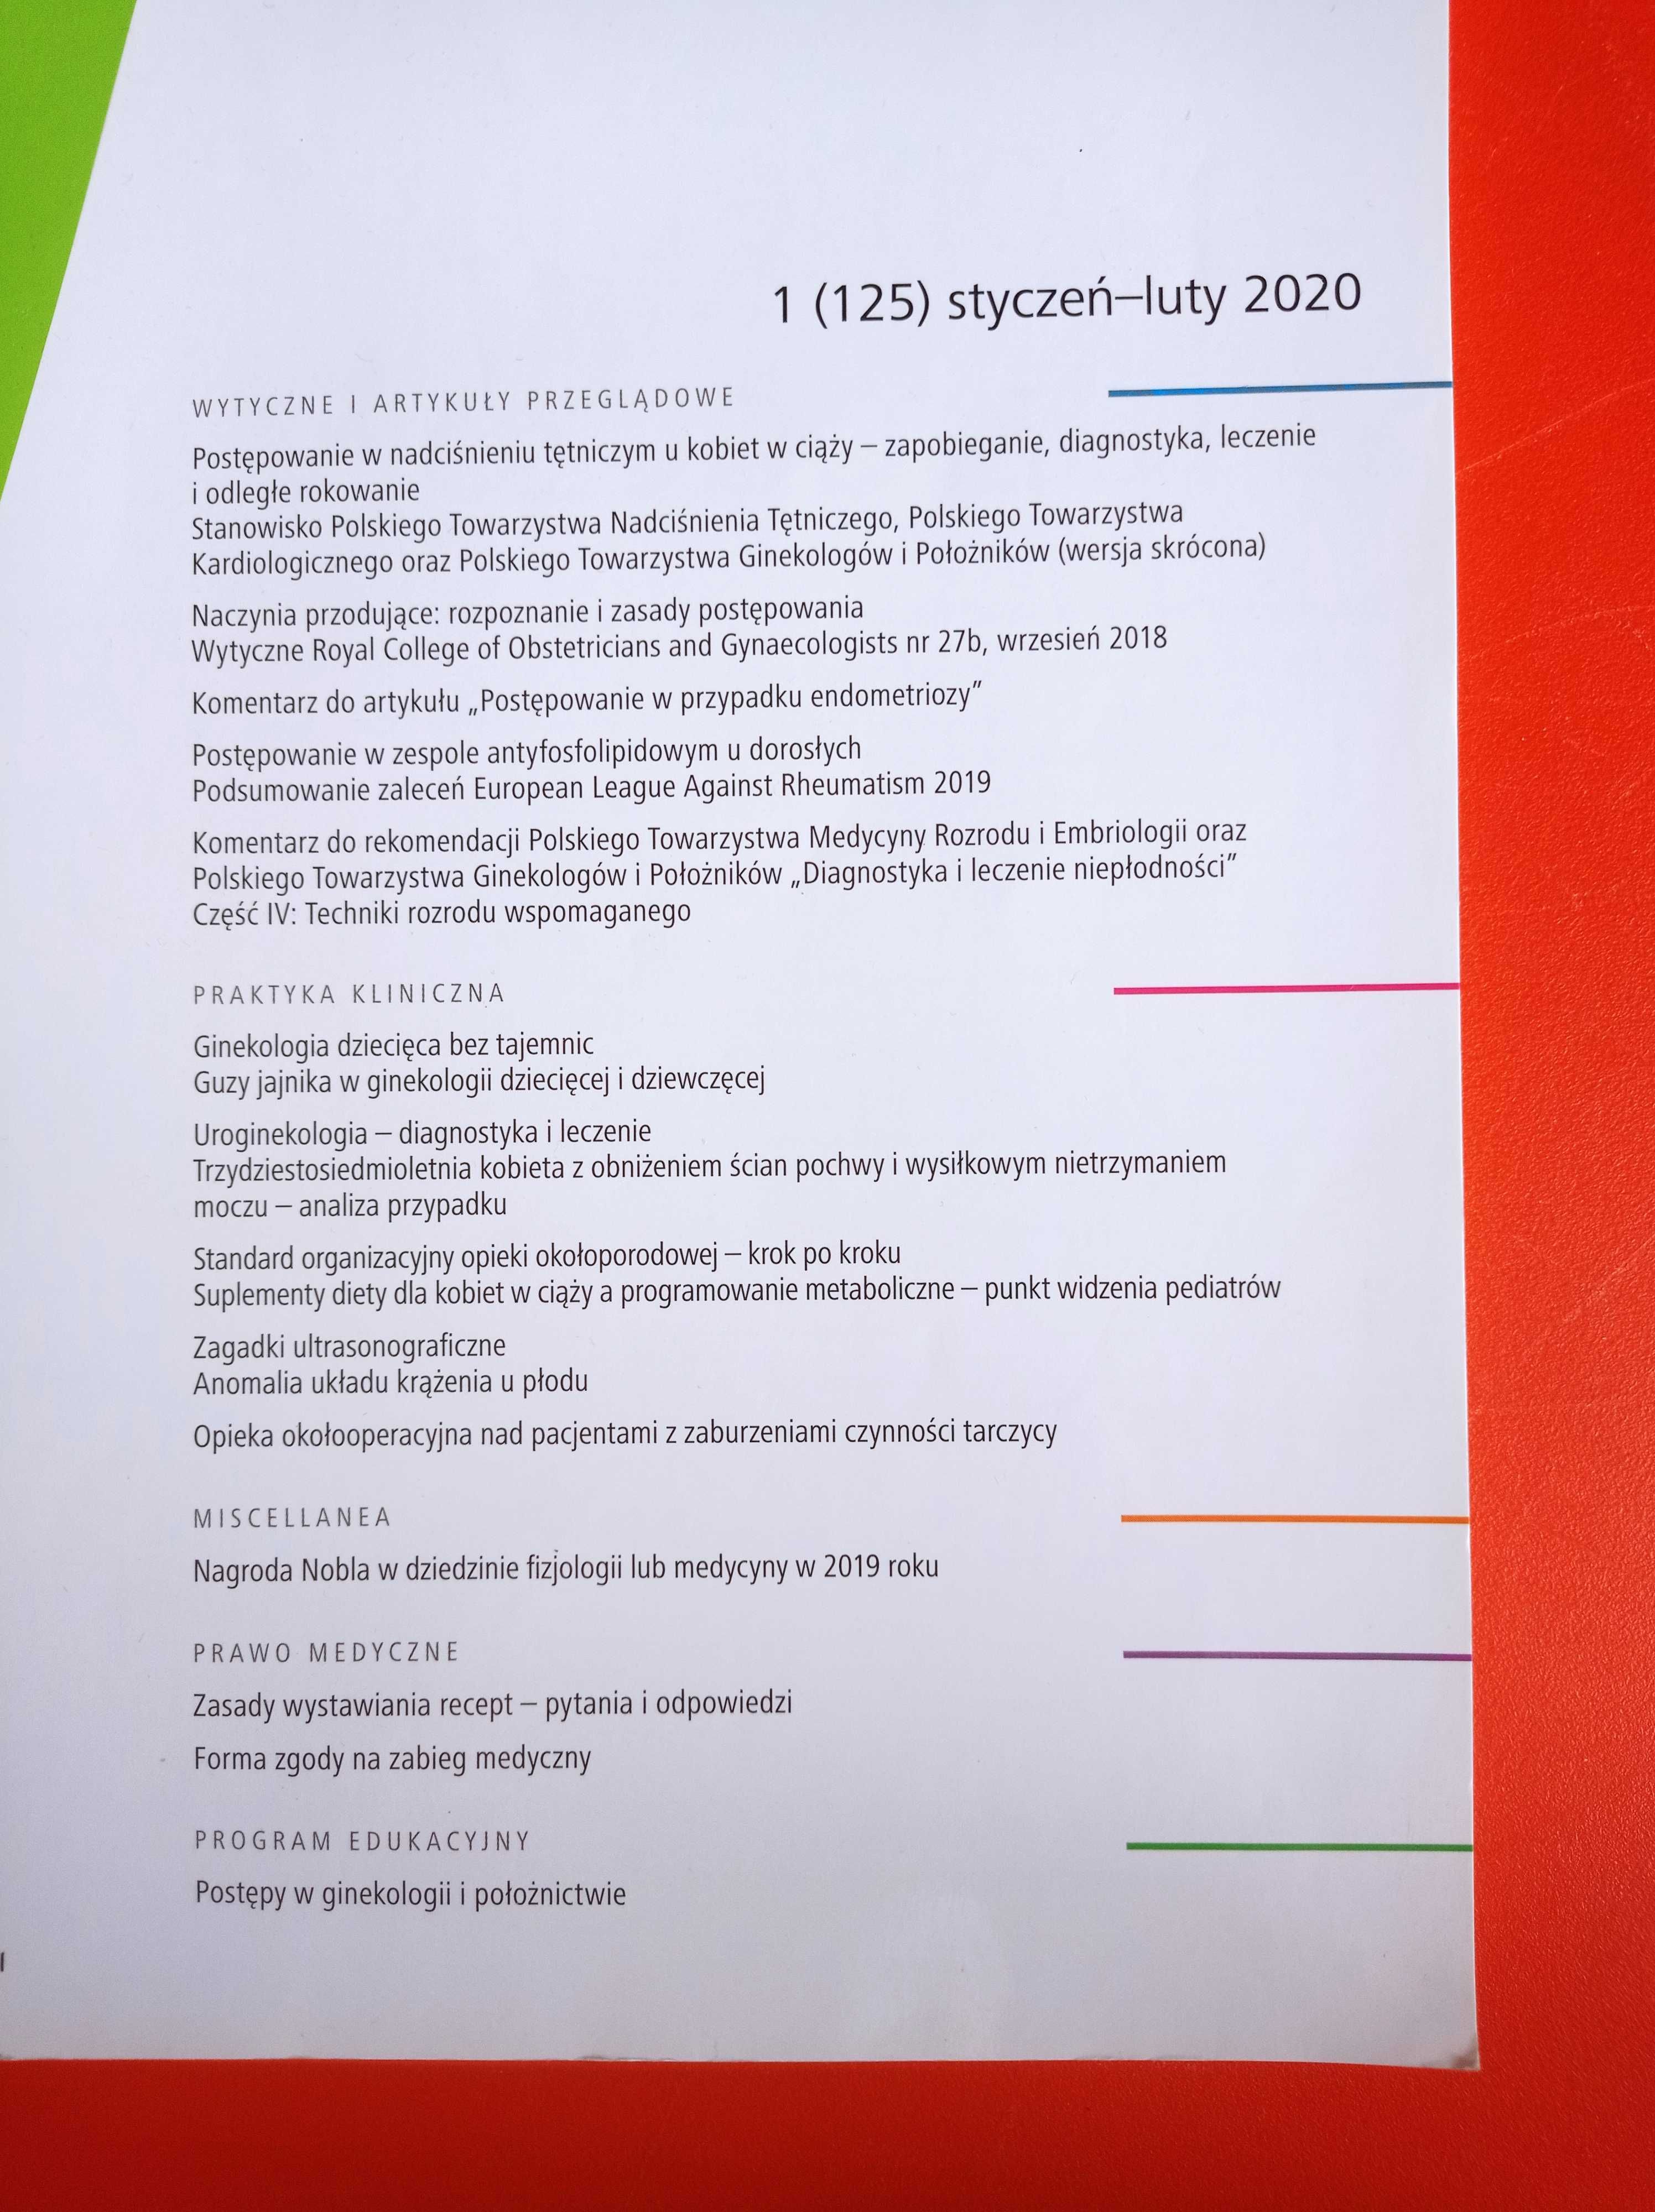 Ginekologia i Położnictwo 1/2020, styczeń-luty 2020